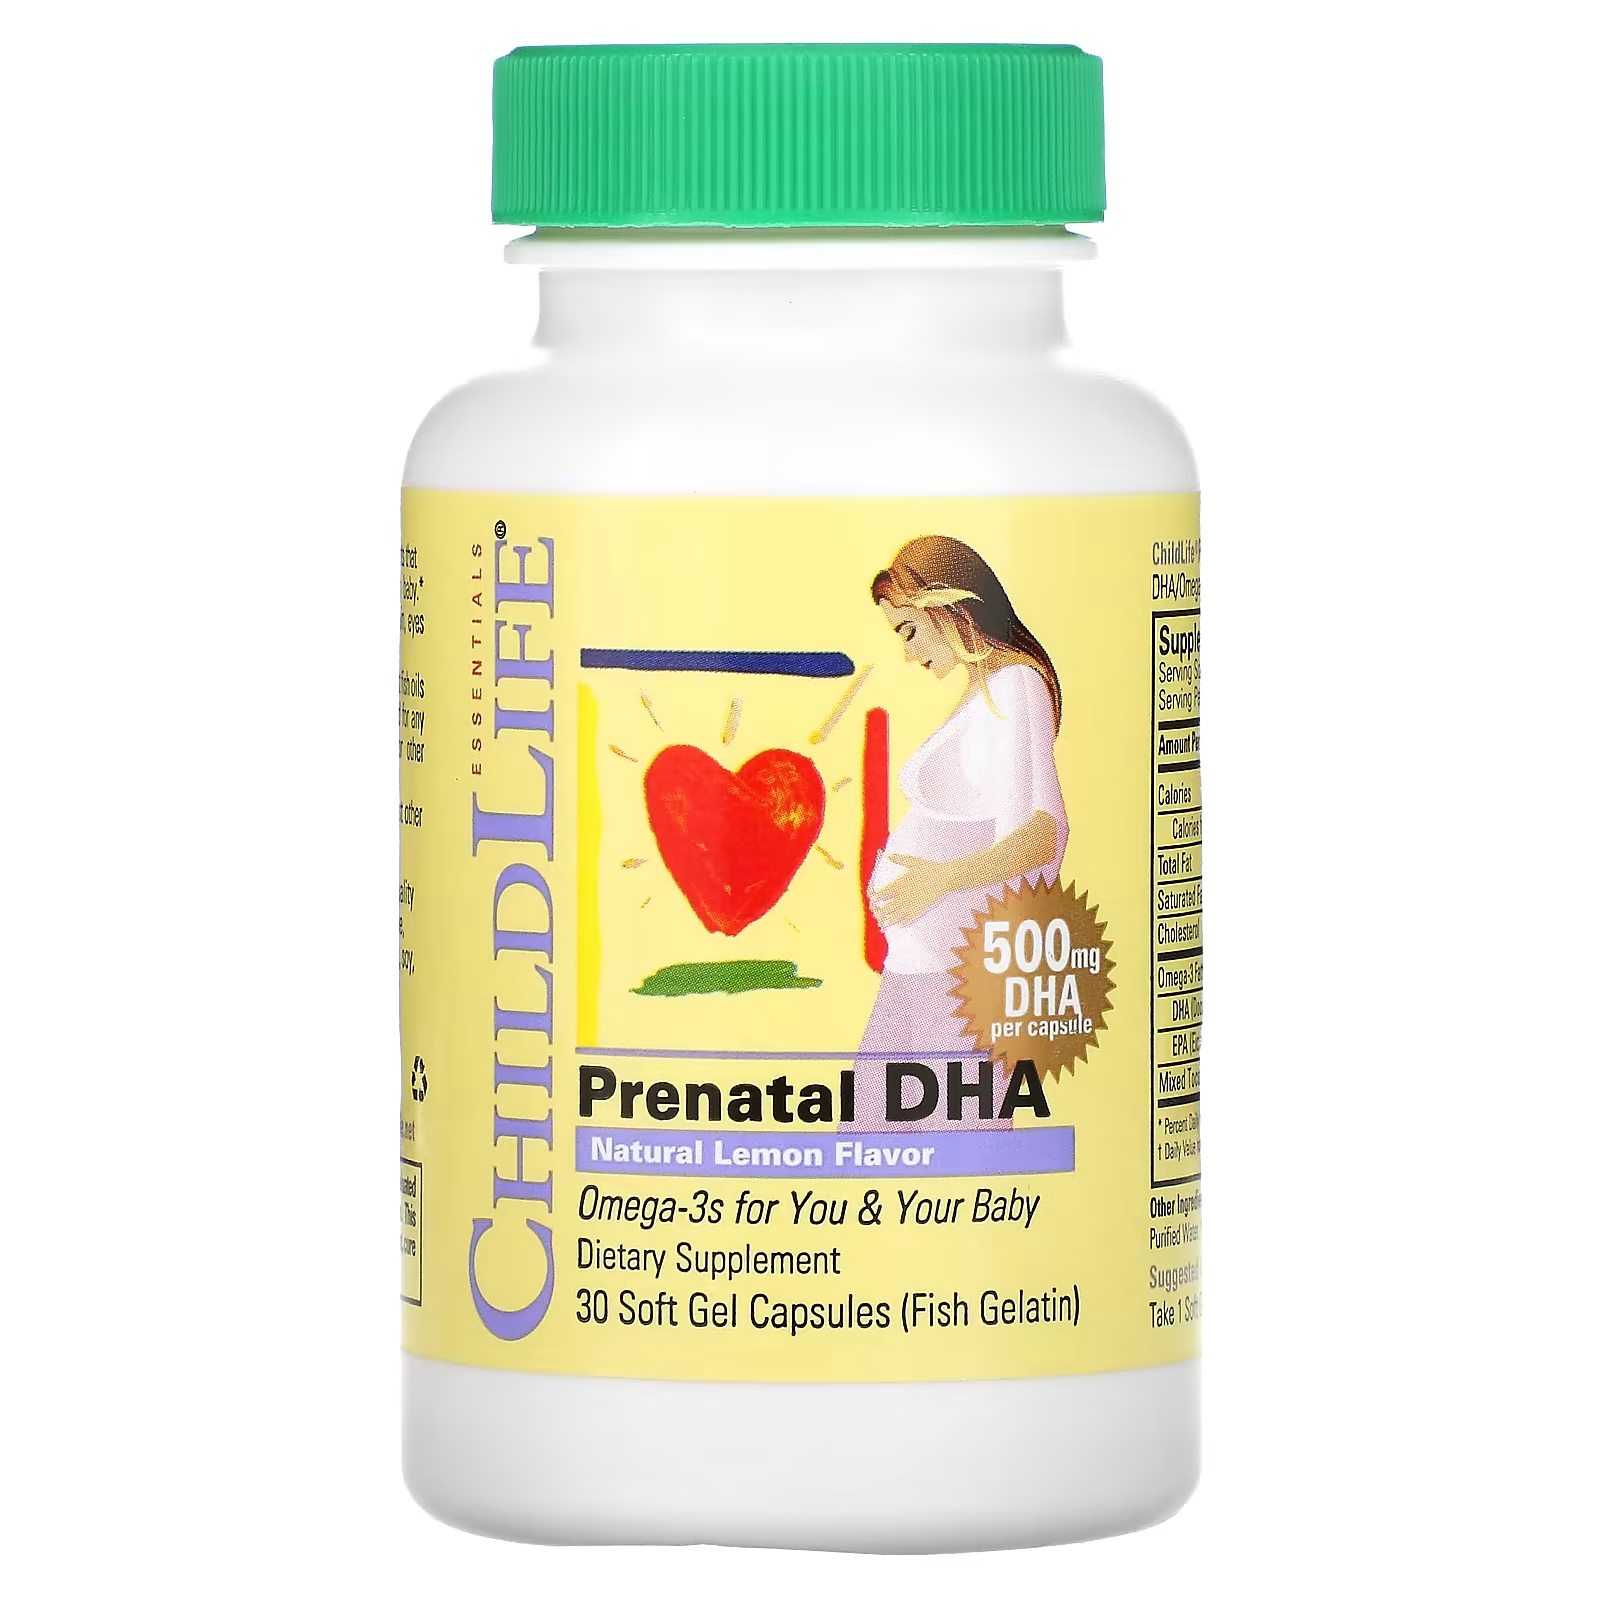 ChildLife Essentials Пренатальная ДГК с натуральным вкусом лимона, 500 мг, 30 мягких гелевых капсул